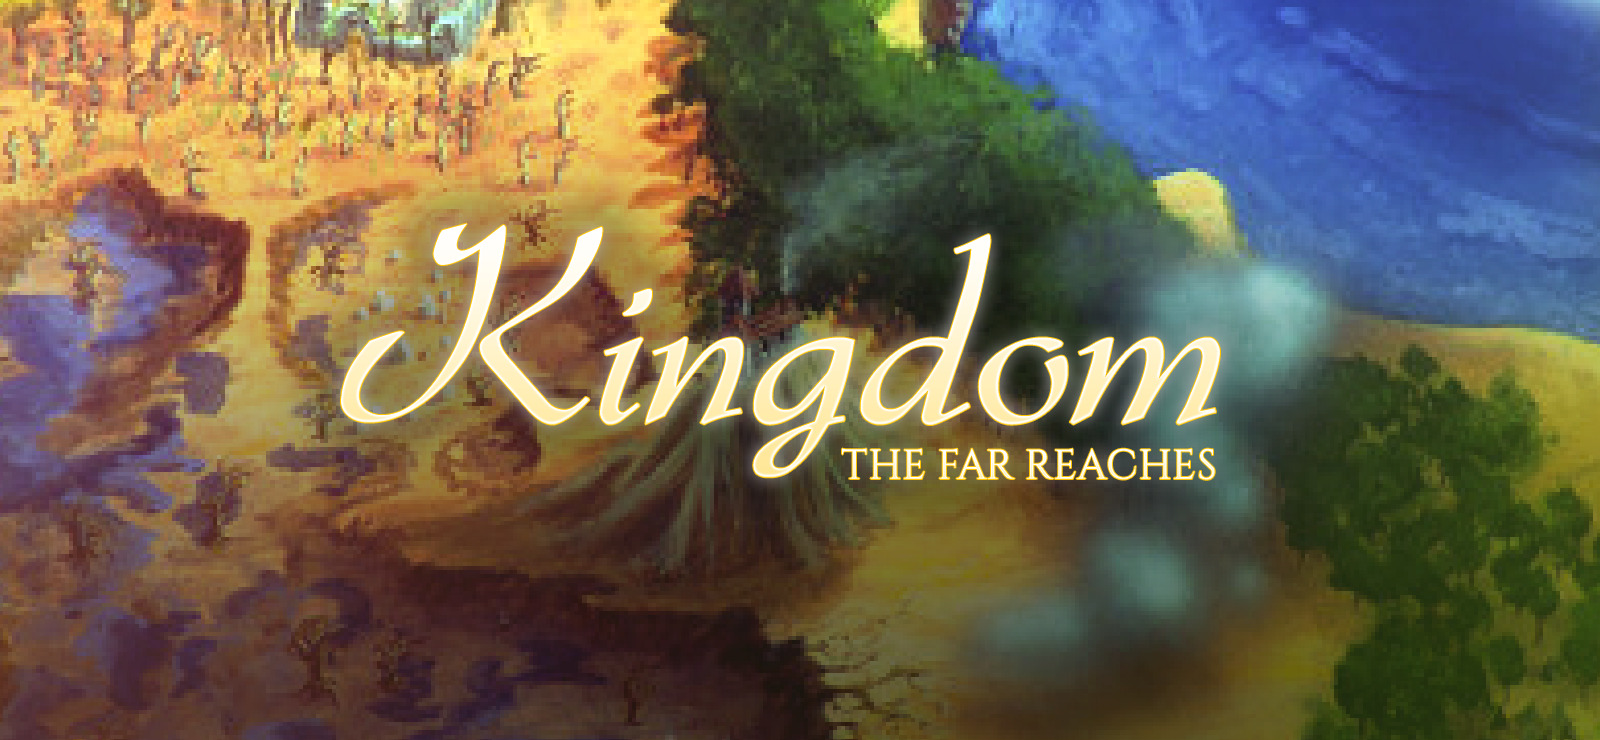 Farther reach. Kingdom: the far reaches. Kingdom - the far reaches (December 30, 1995). Kingdom: the far reaches MACPLAY. Kingdom book one the far reaches.